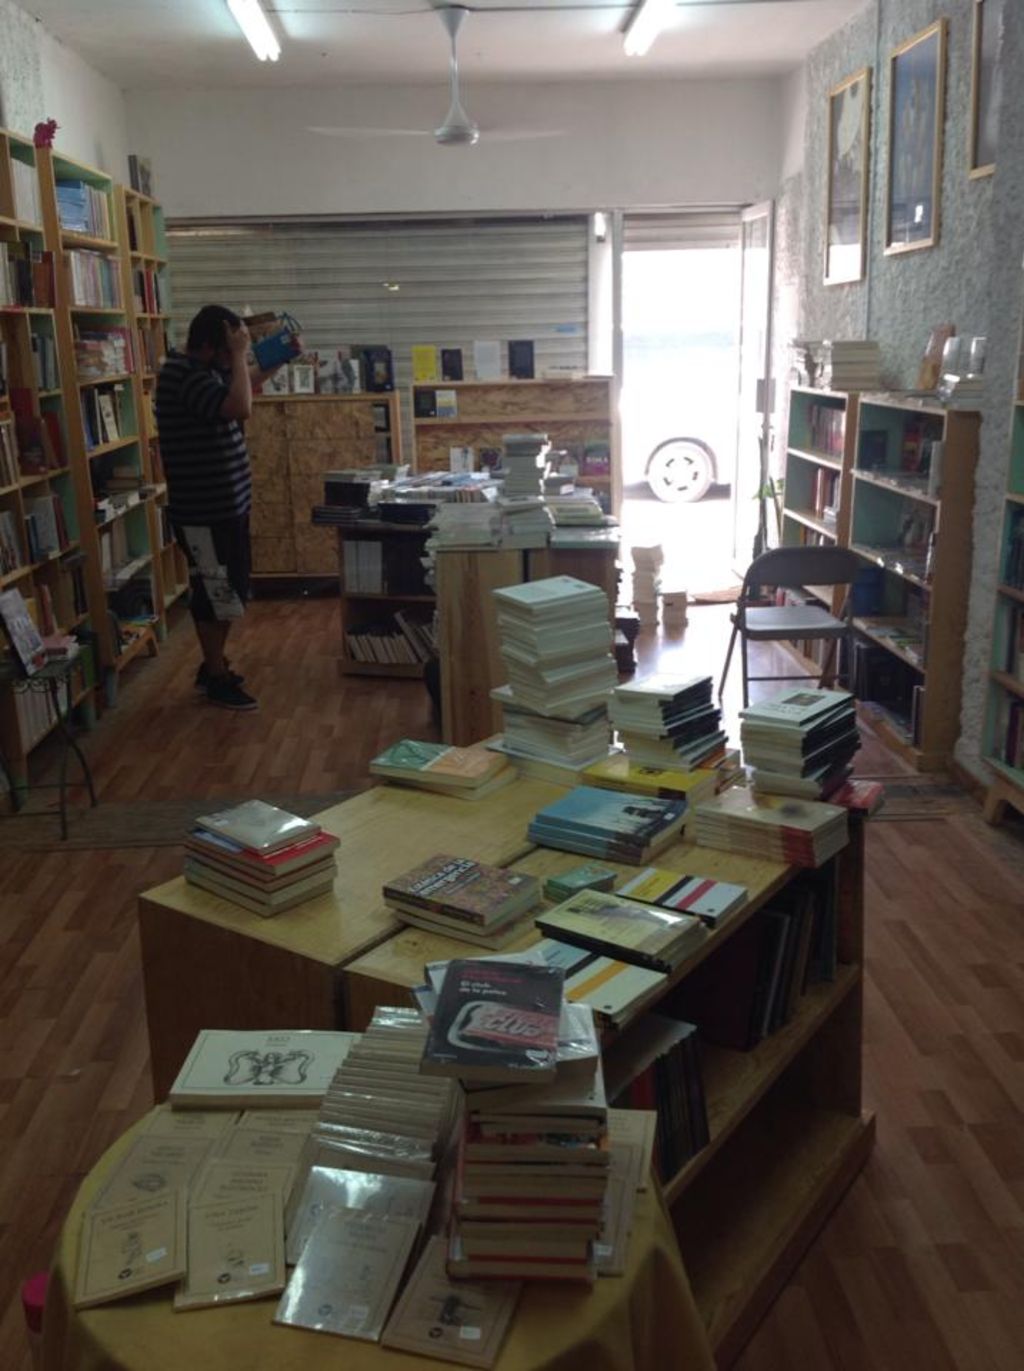 Concurrida. El Astillero es una librería especializada donde se ofrecen talleres y se realizan actividades culturales.